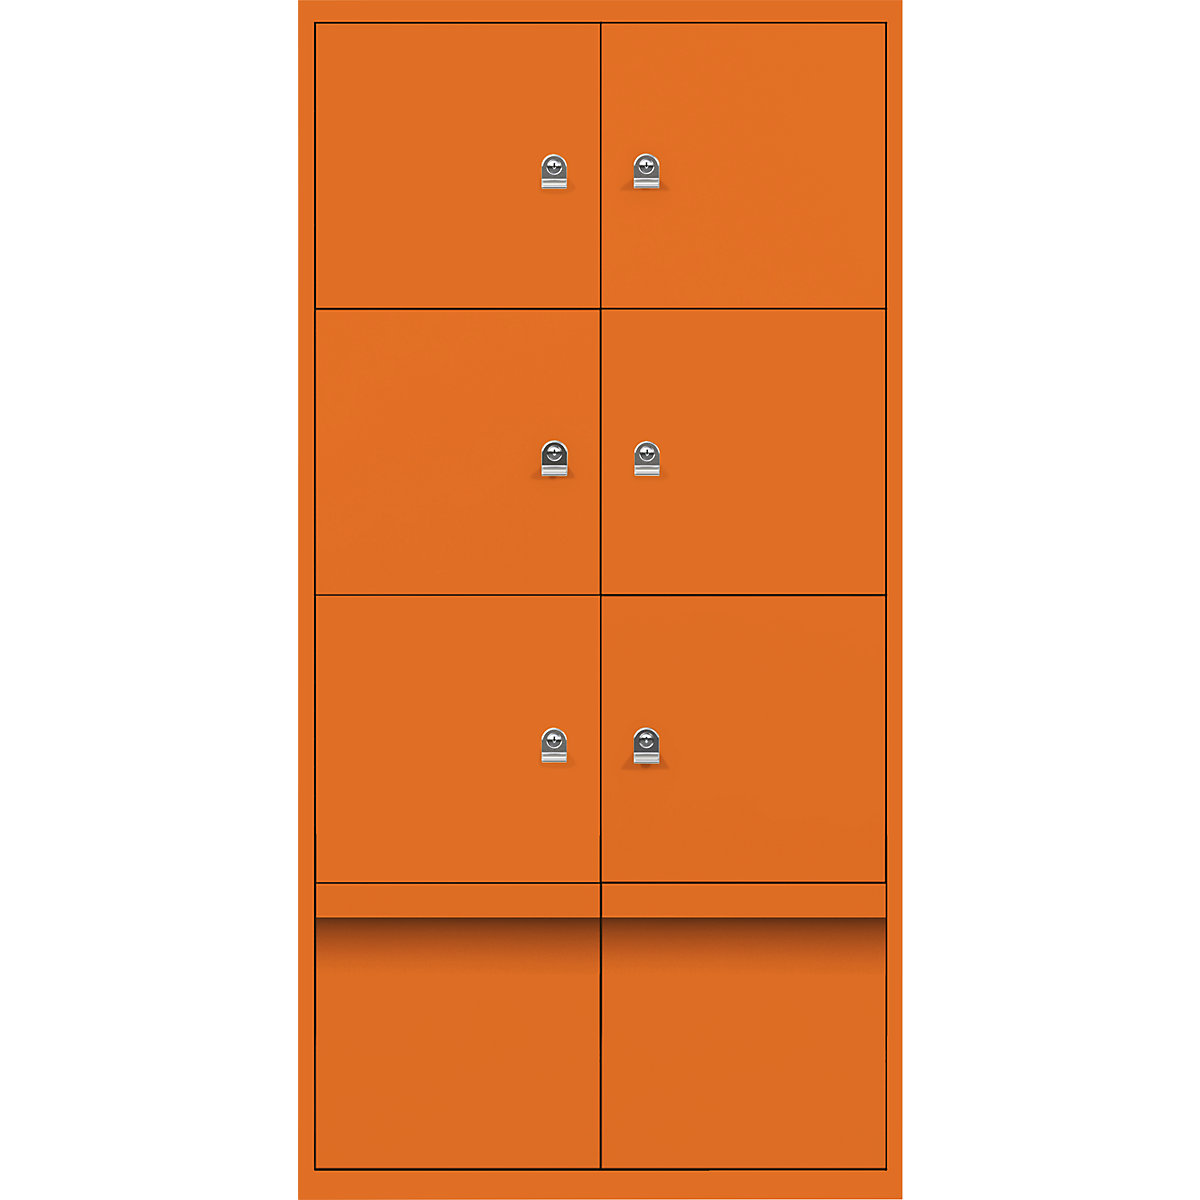 Omara s predelki z zaklepanjem LateralFile™ – BISLEY, 6 predelkov z zaklepanjem in 2 predala, višina po 375 mm, oranžne barve-19